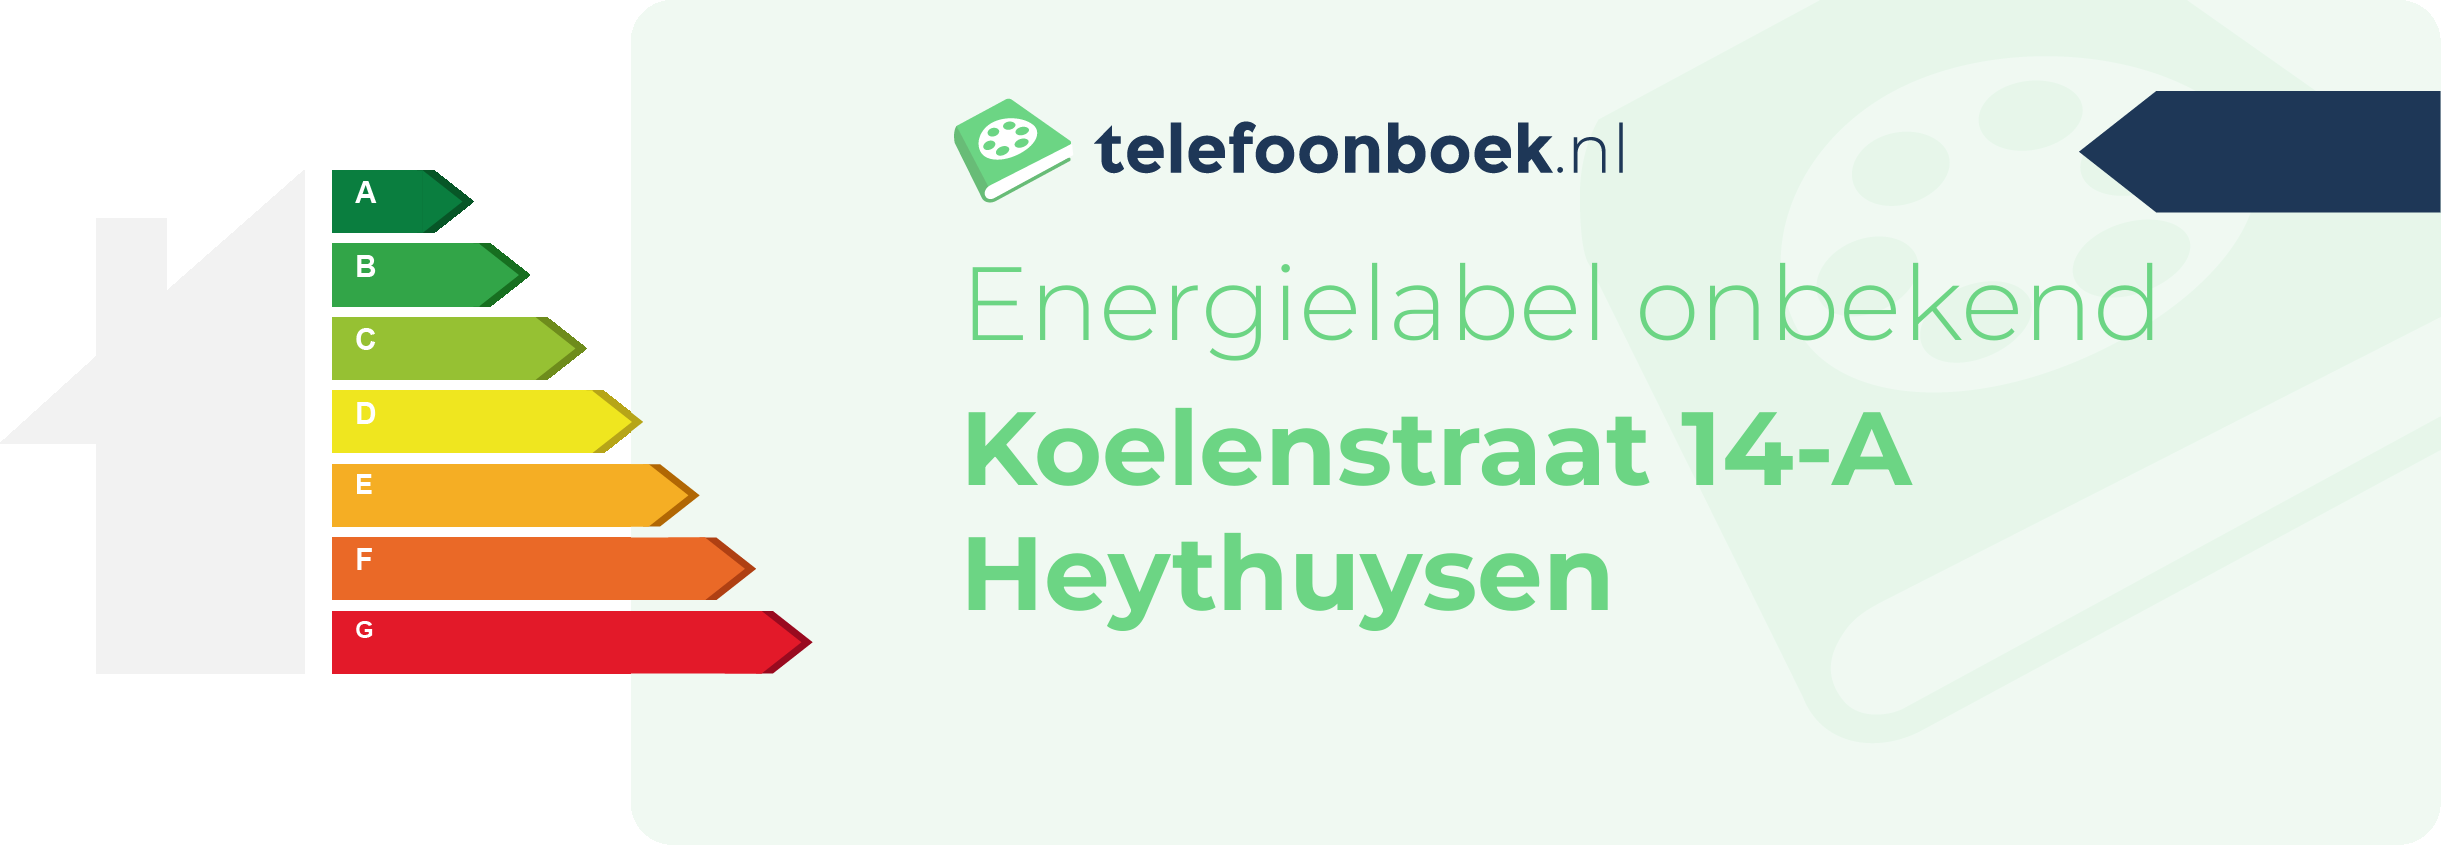 Energielabel Koelenstraat 14-A Heythuysen